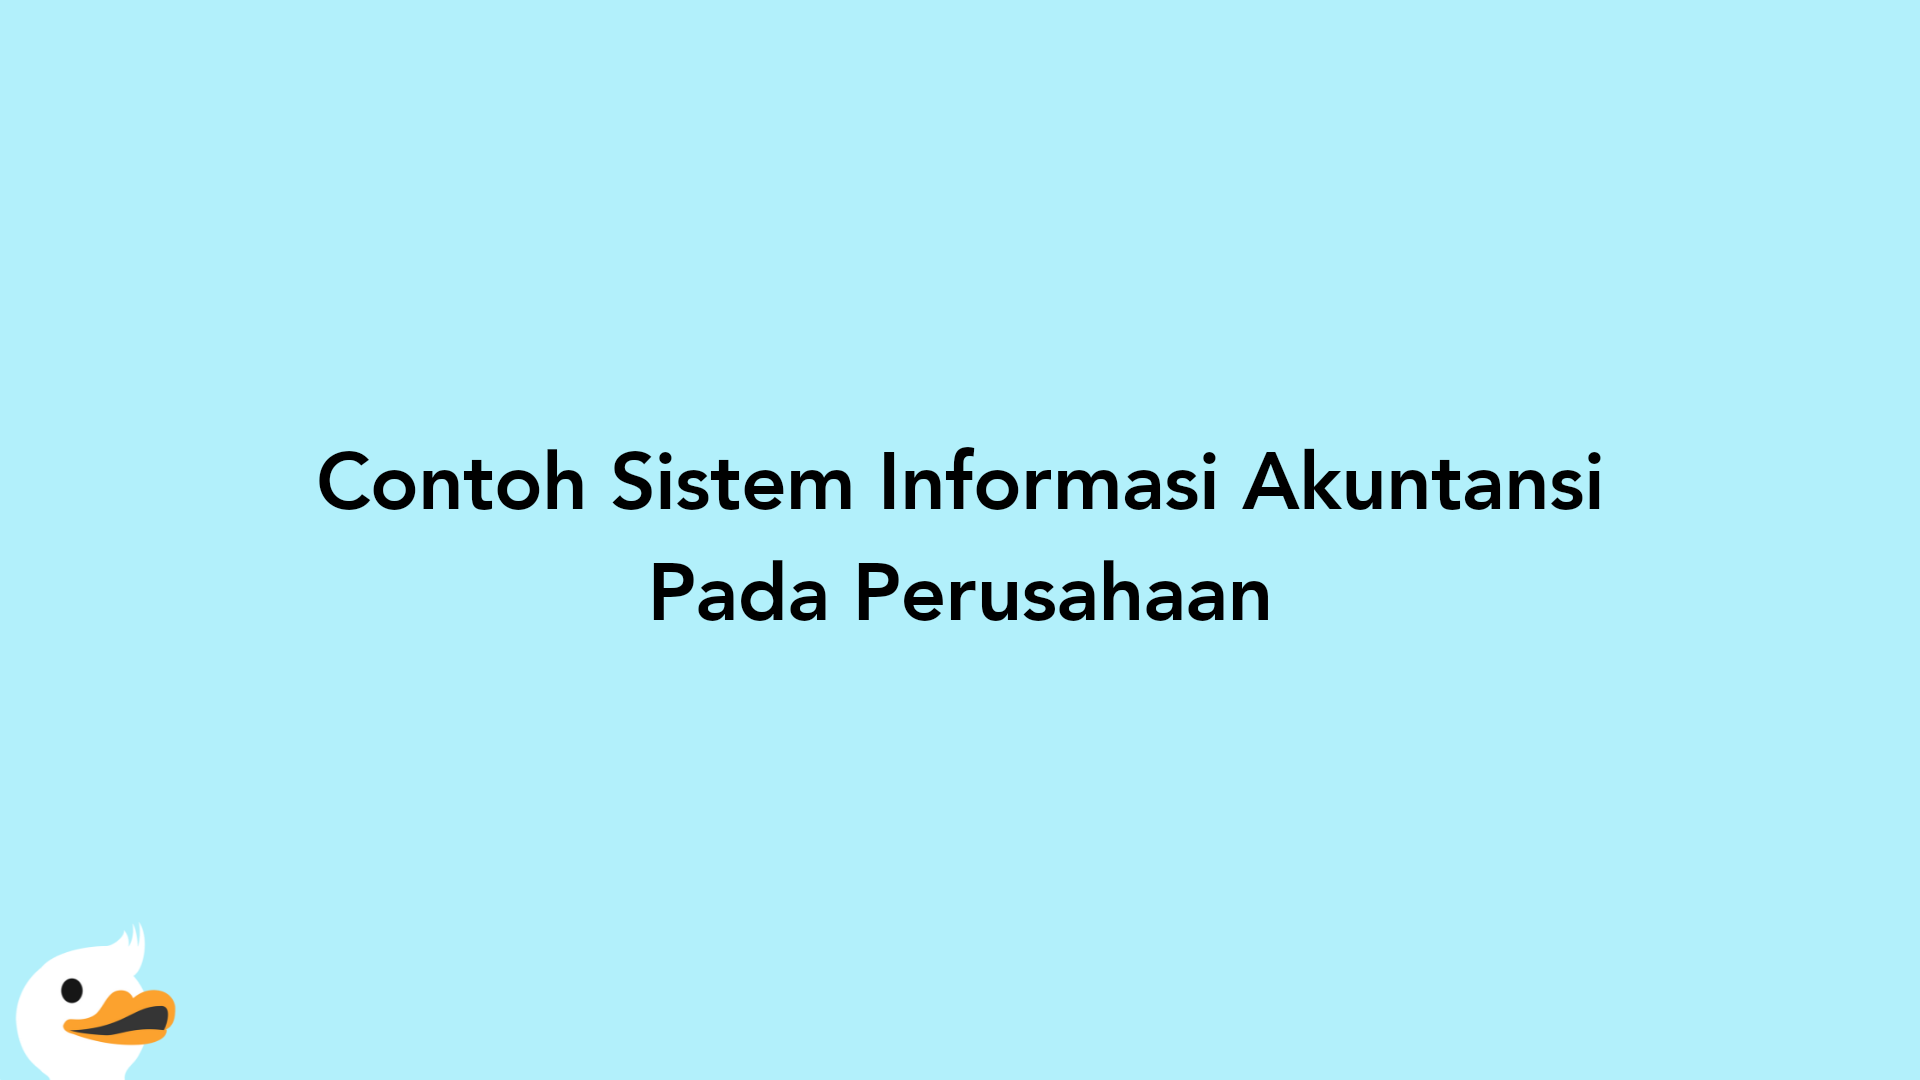 Contoh Sistem Informasi Akuntansi Pada Perusahaan